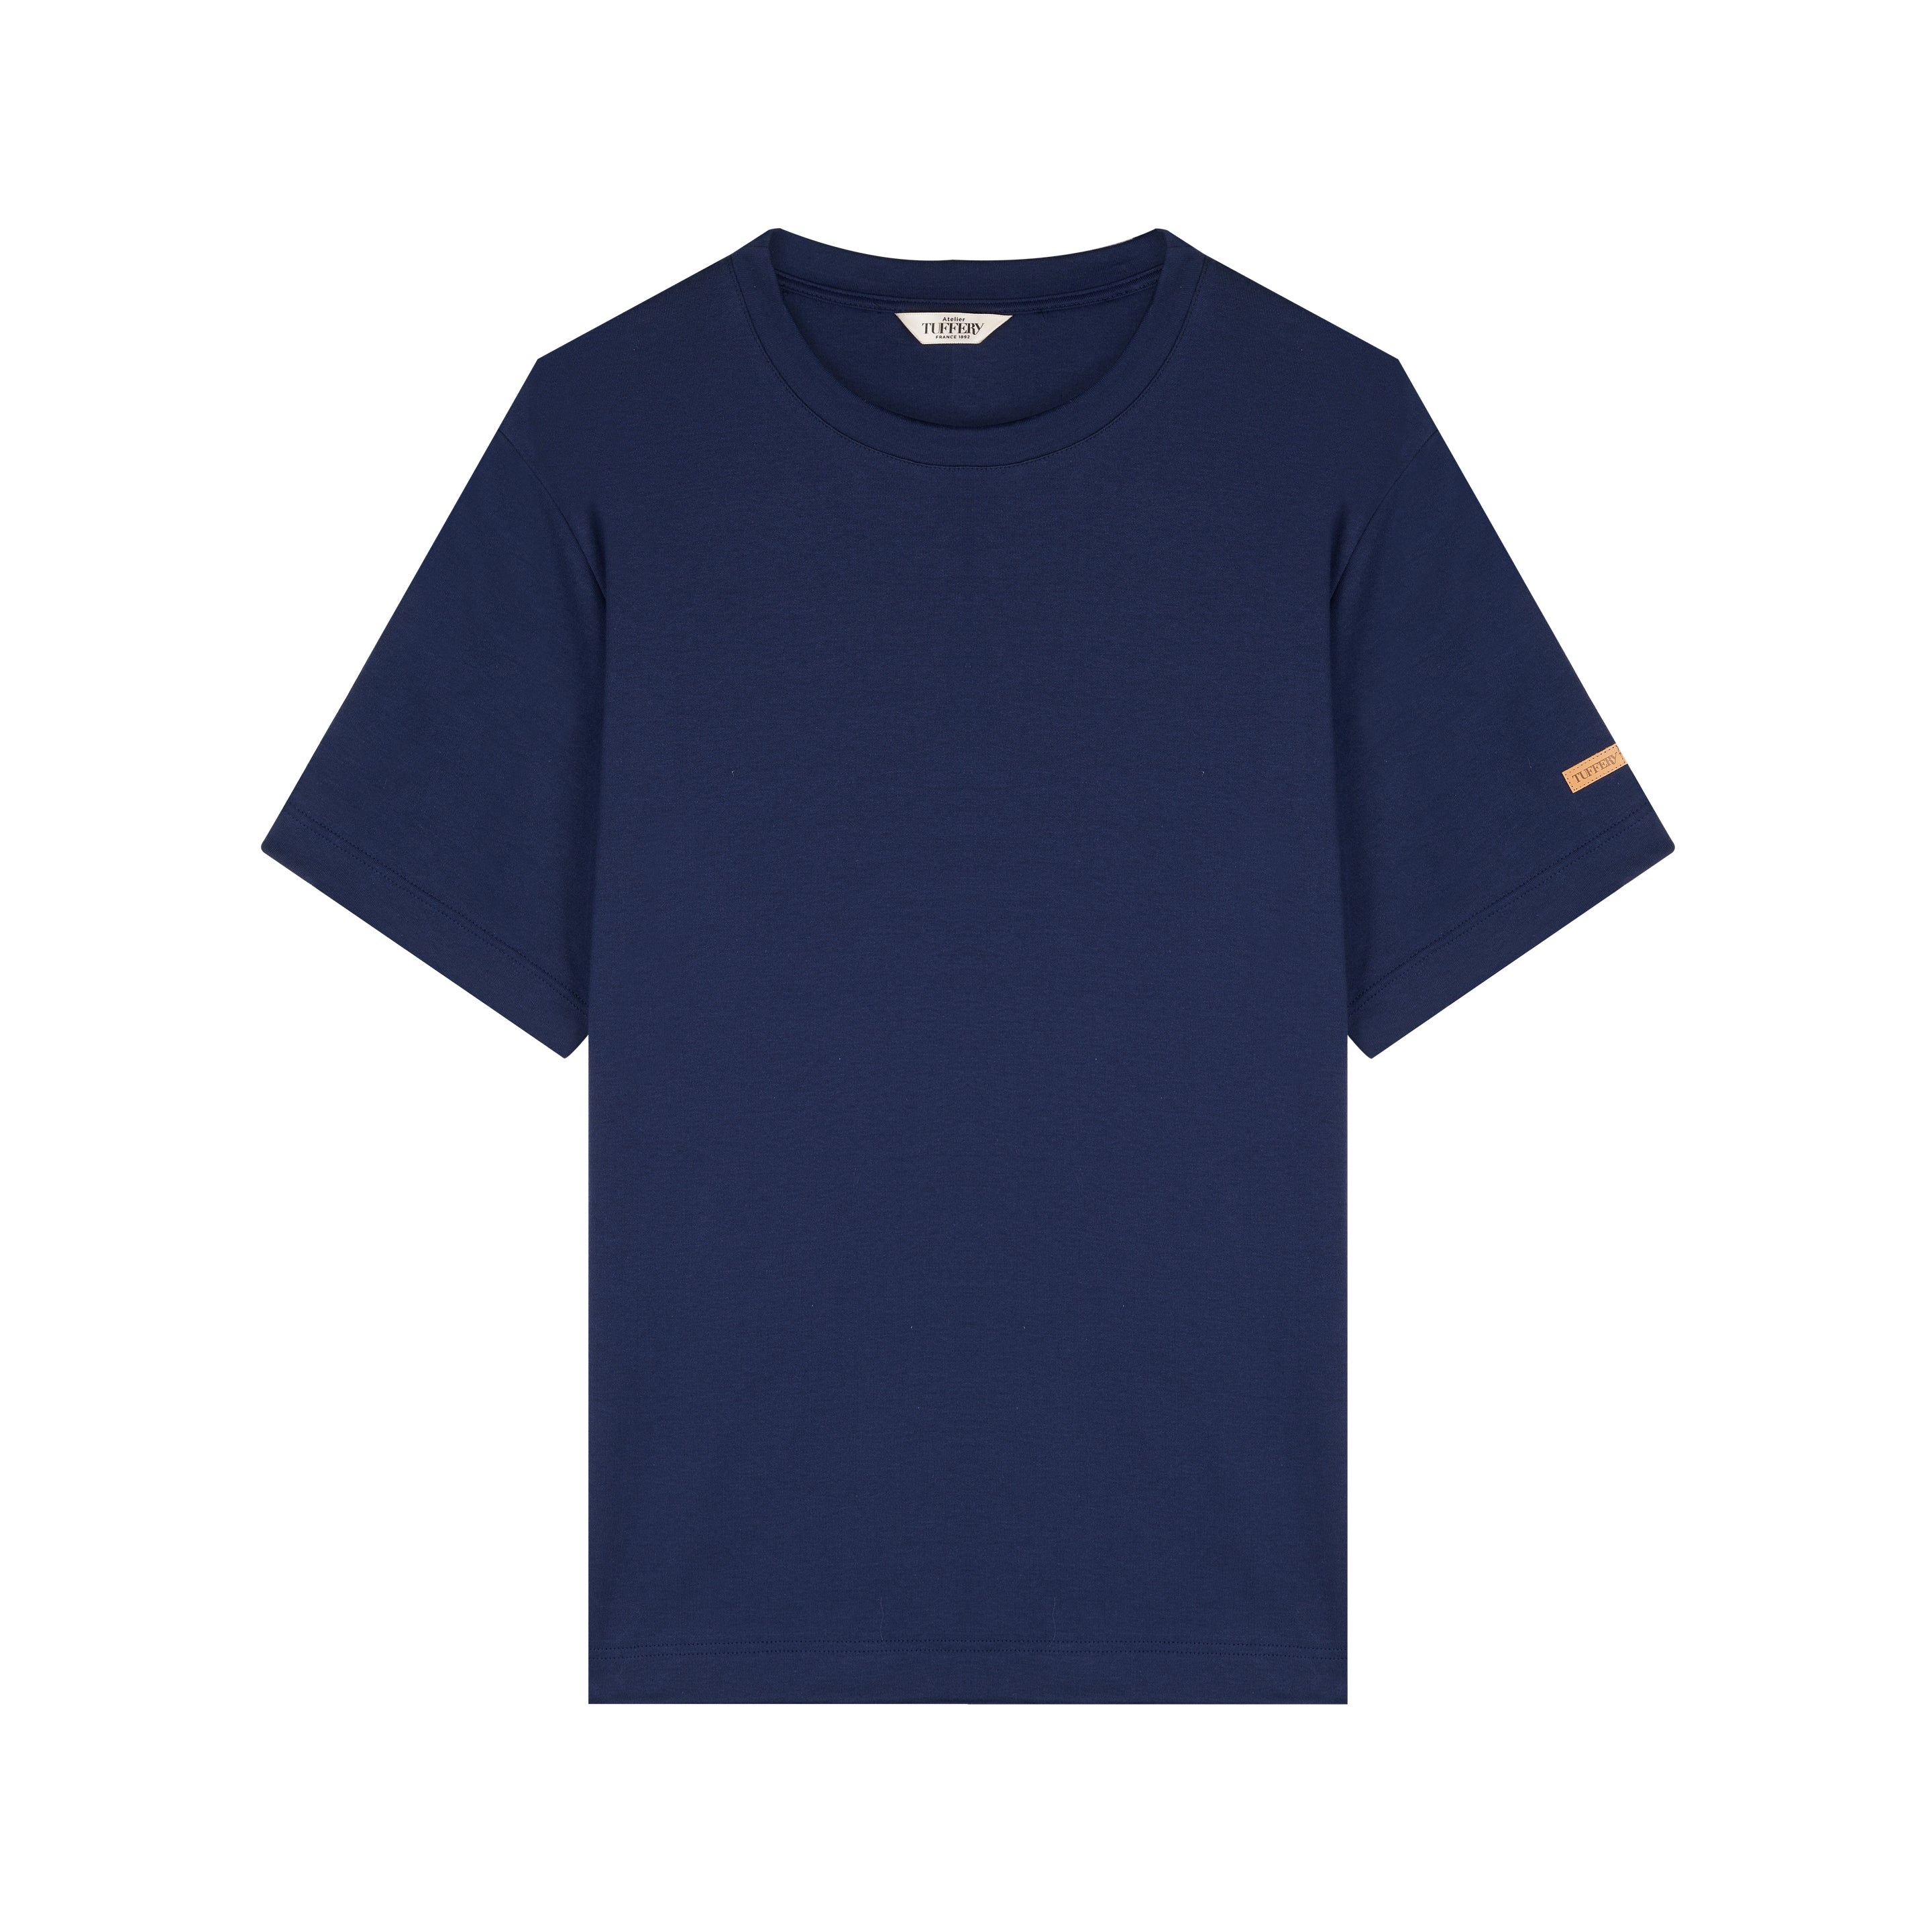 T-shirt Homme 100% Coton Bio Bleu Marine – Atelier Tuffery